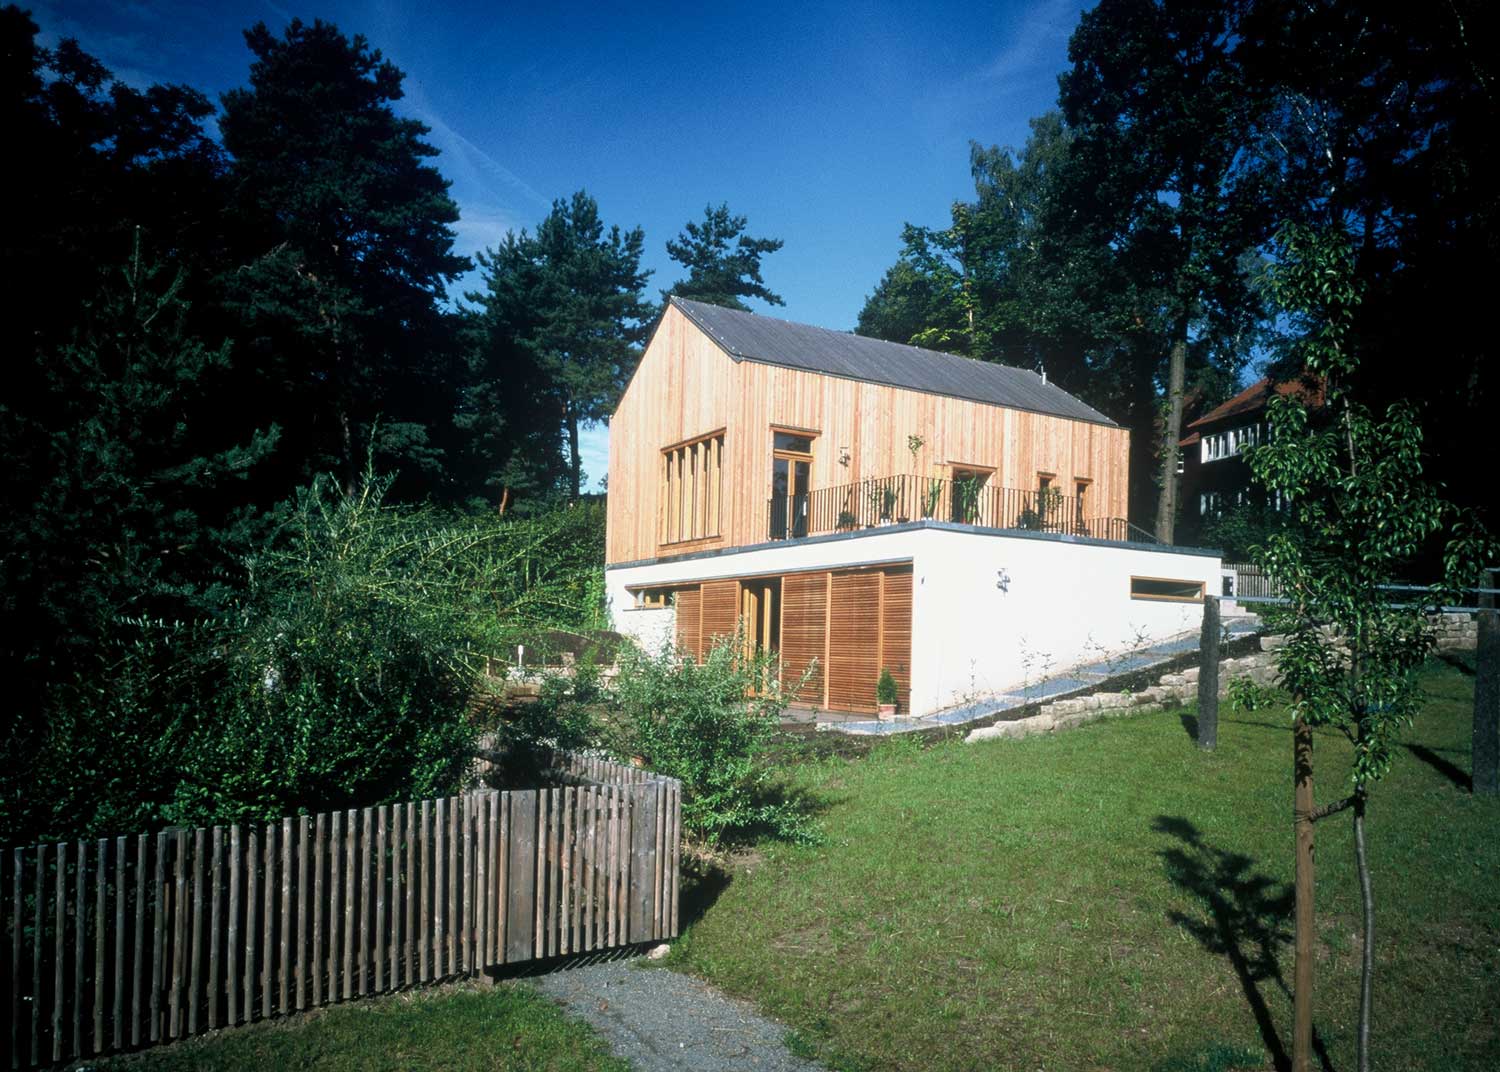 Foto, farbig: Holzhaus mit schmalen Fenstern auf einem weißen Untergeschoss mit großen Türen aus Holzlamellen.